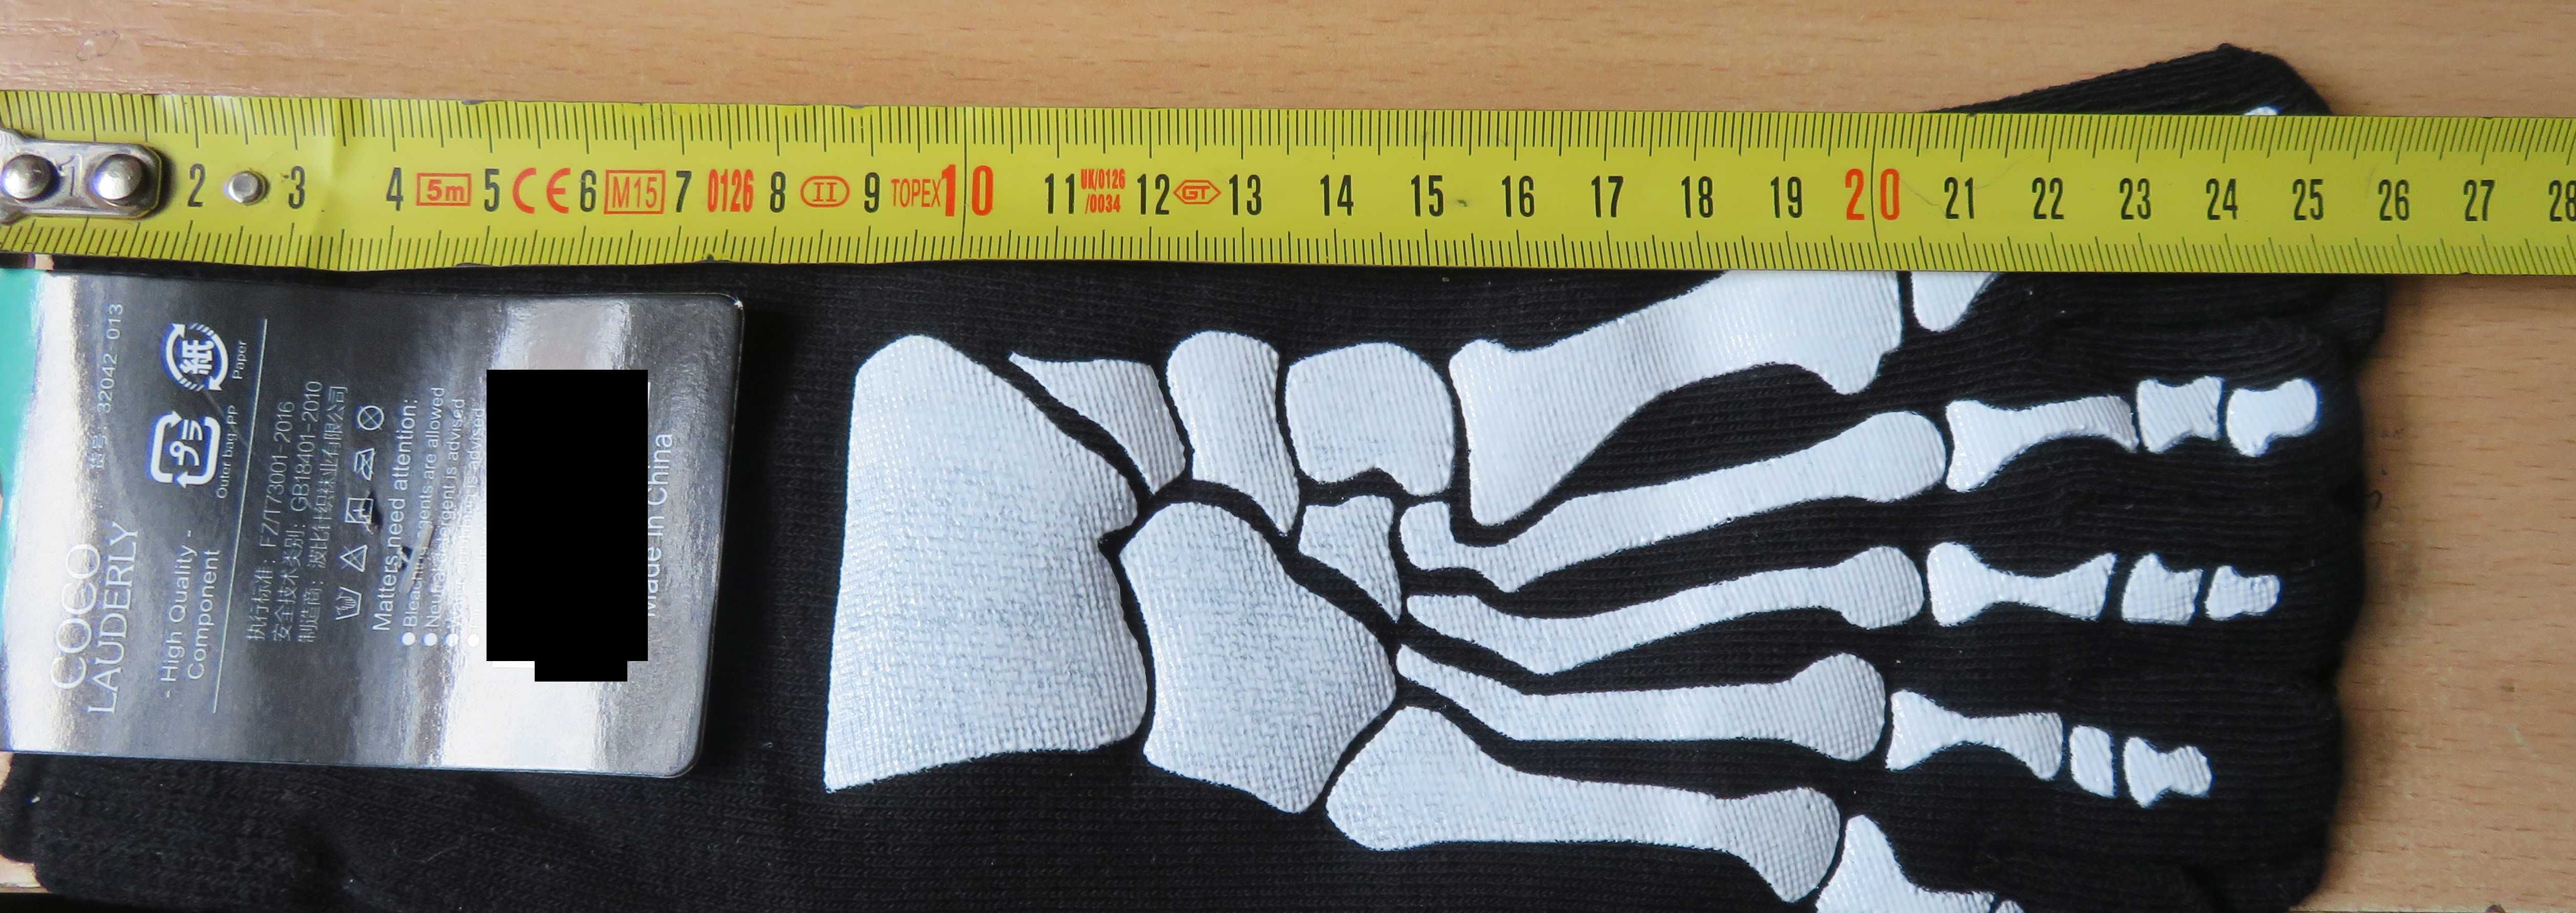 Fivefingers skarpetki kości szkielet 5 palców pięciopalczaste